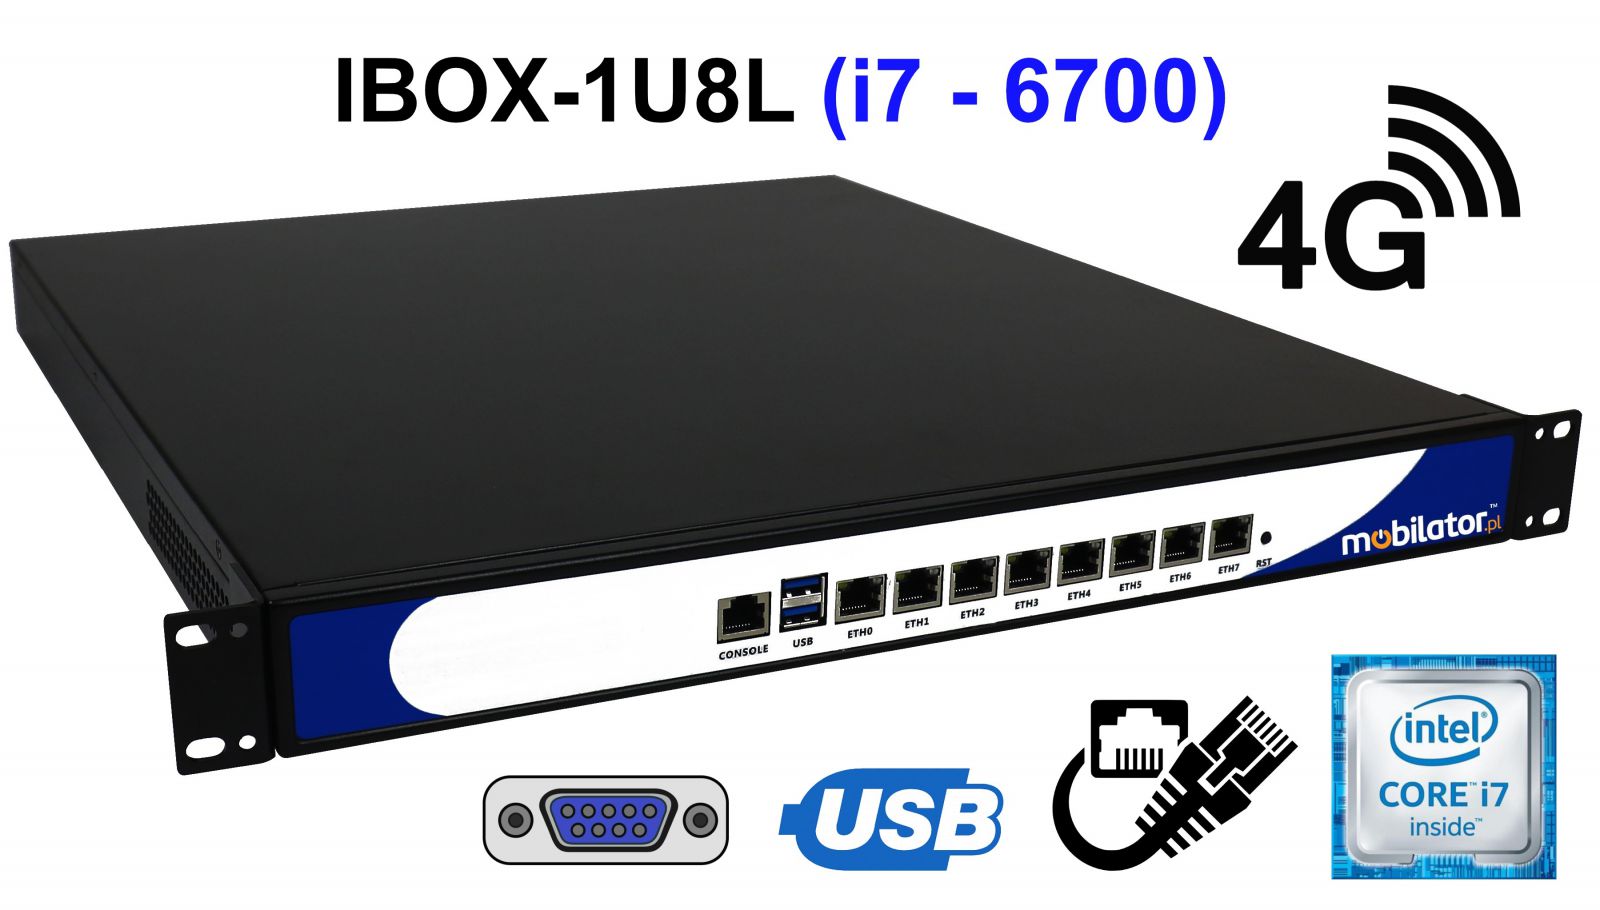 IBOX-1U8L -Nowoczesny komputer przemysłowy  fanless 8x LAN do szafy rakowej pasywny vga intel mobilator wzmocniony szybki 8 lan rj45